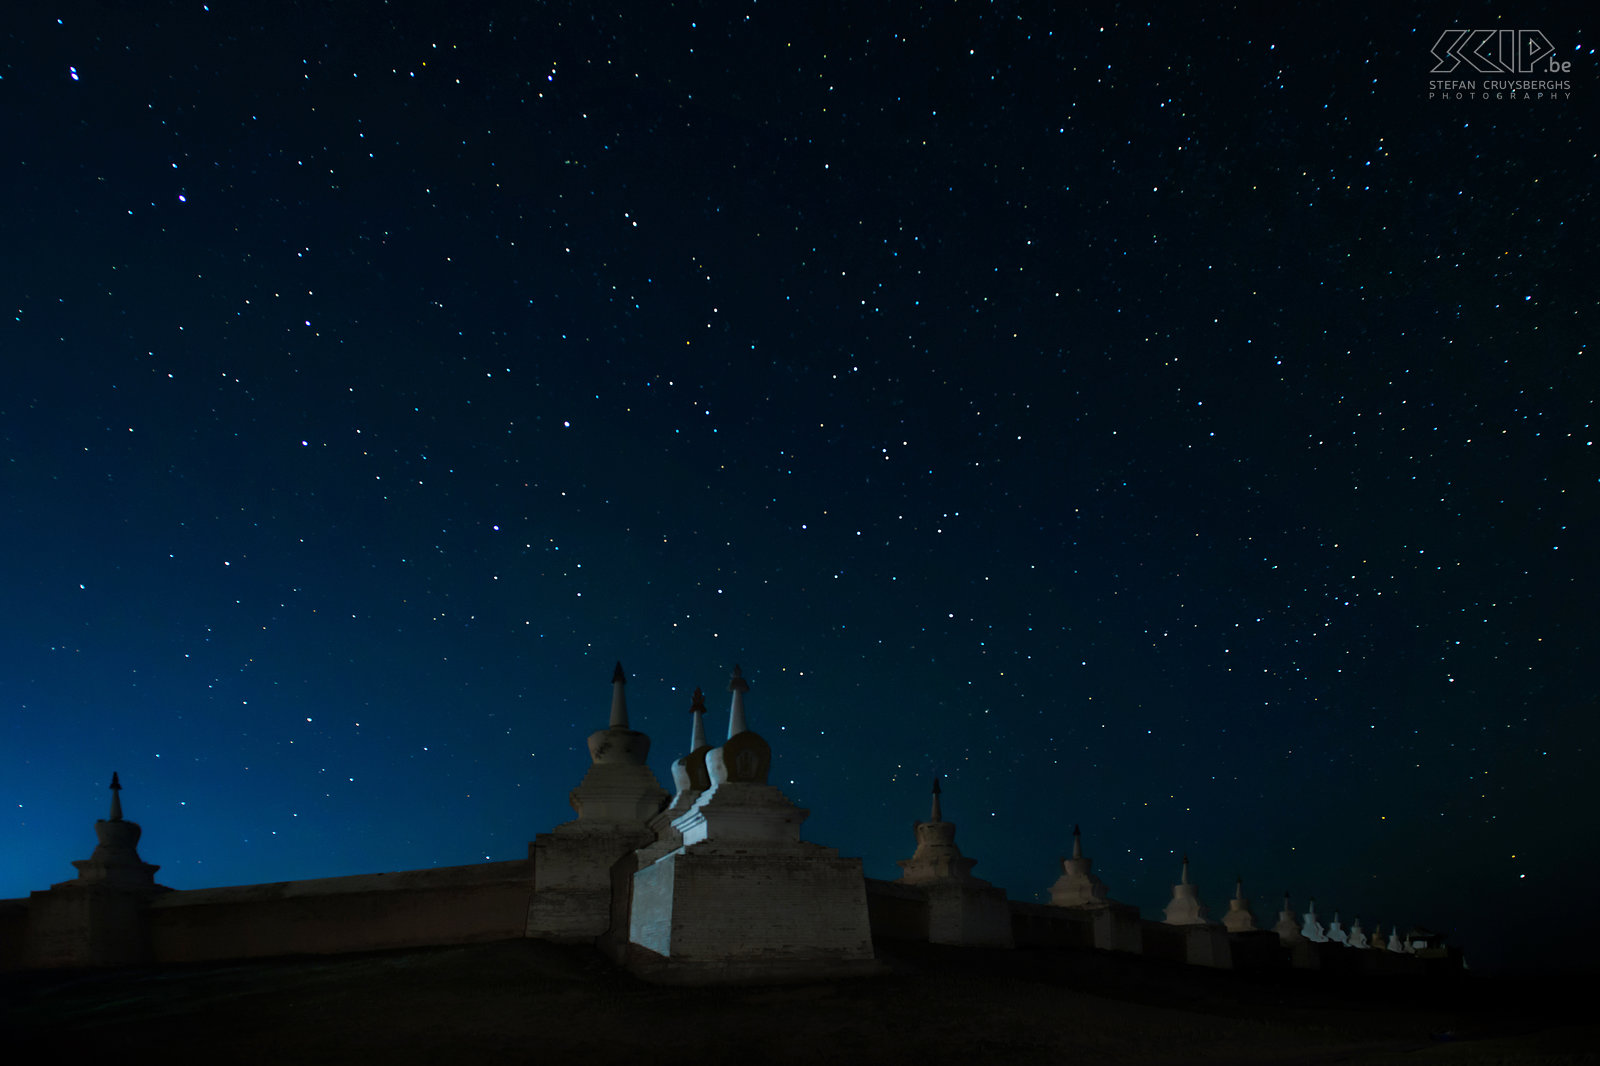 Kharkhorin - Erdene Zuu by night Nachtfoto van Erdene Zuu in Kharkhorin/Karakorum in centraal Mongolië. Samen met m’n vriendin ben ik ’s avonds teruggekeerd naar de grote buitenmuren met stoepa’s van dit oude Boedhistische klooster.  Stefan Cruysberghs